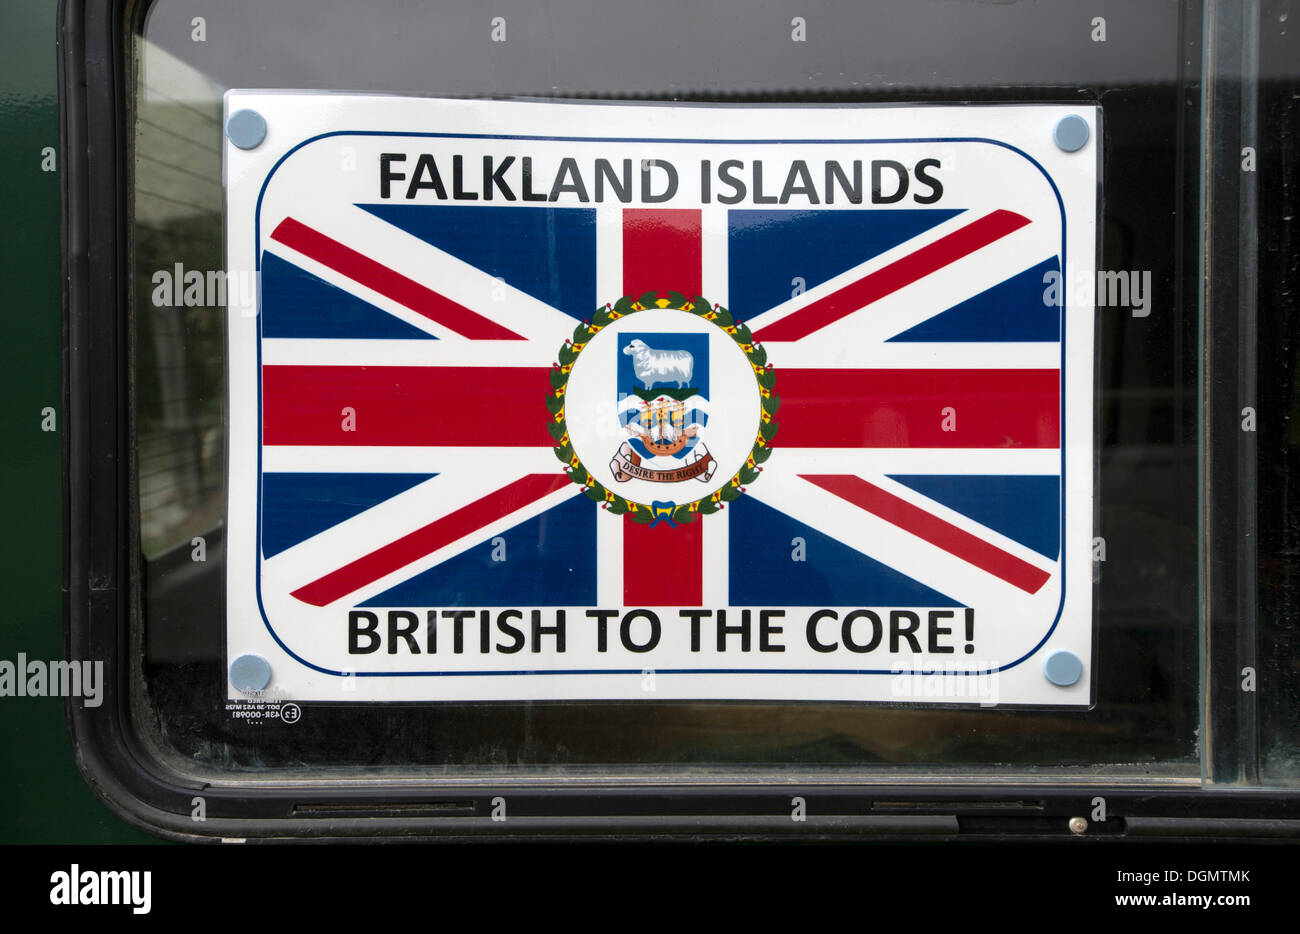 "Falkland-Inseln - Britisch bis ins Mark" zu unterzeichnen, mit Wappen und die Flagge der Falkland-Inseln, in einem Auto angezeigt Stockfoto